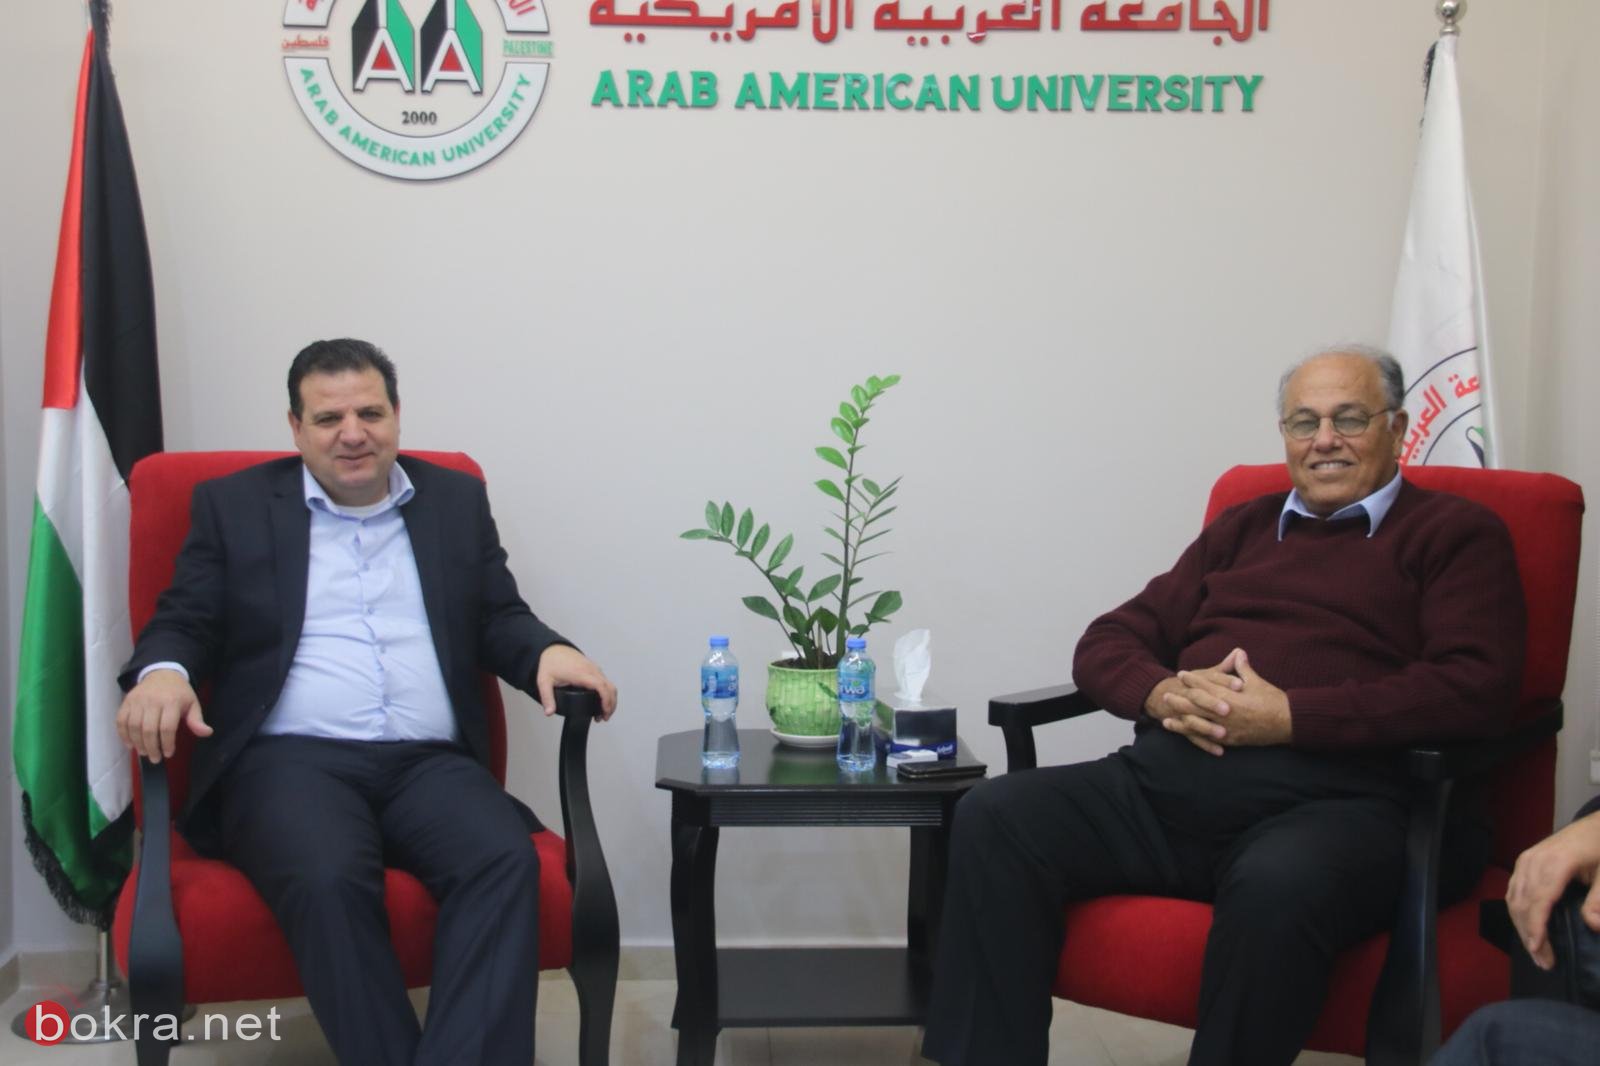 النائب أيمن عودة يلتقي بطلّاب الجامعة العربيّة الأمريكيّة ويستمع لمشاكلهم -7